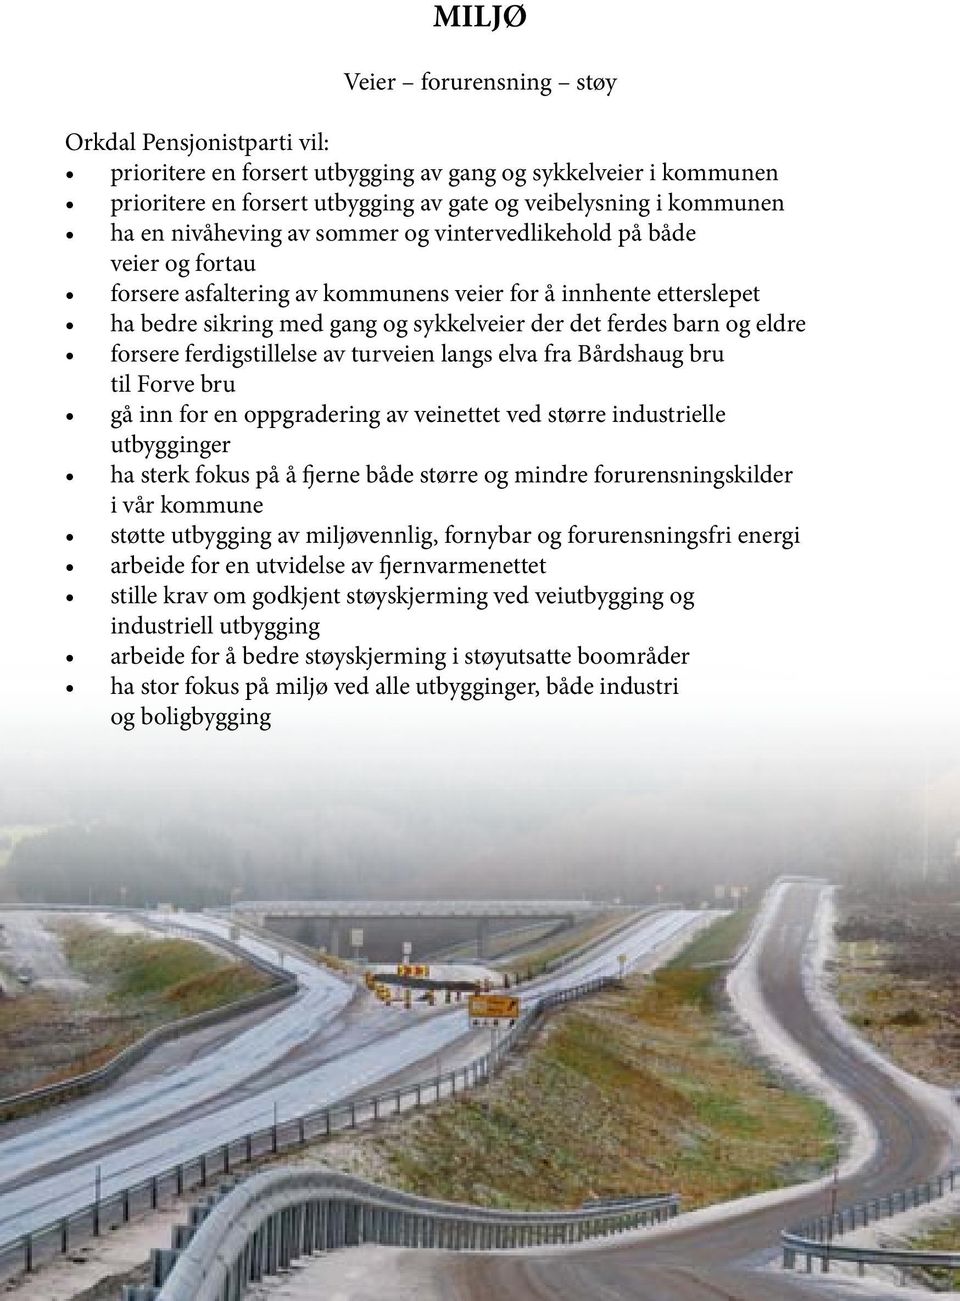 eldre forsere ferdigstillelse av turveien langs elva fra Bårdshaug bru til Forve bru gå inn for en oppgradering av veinettet ved større industrielle utbygginger ha sterk fokus på å fjerne både større